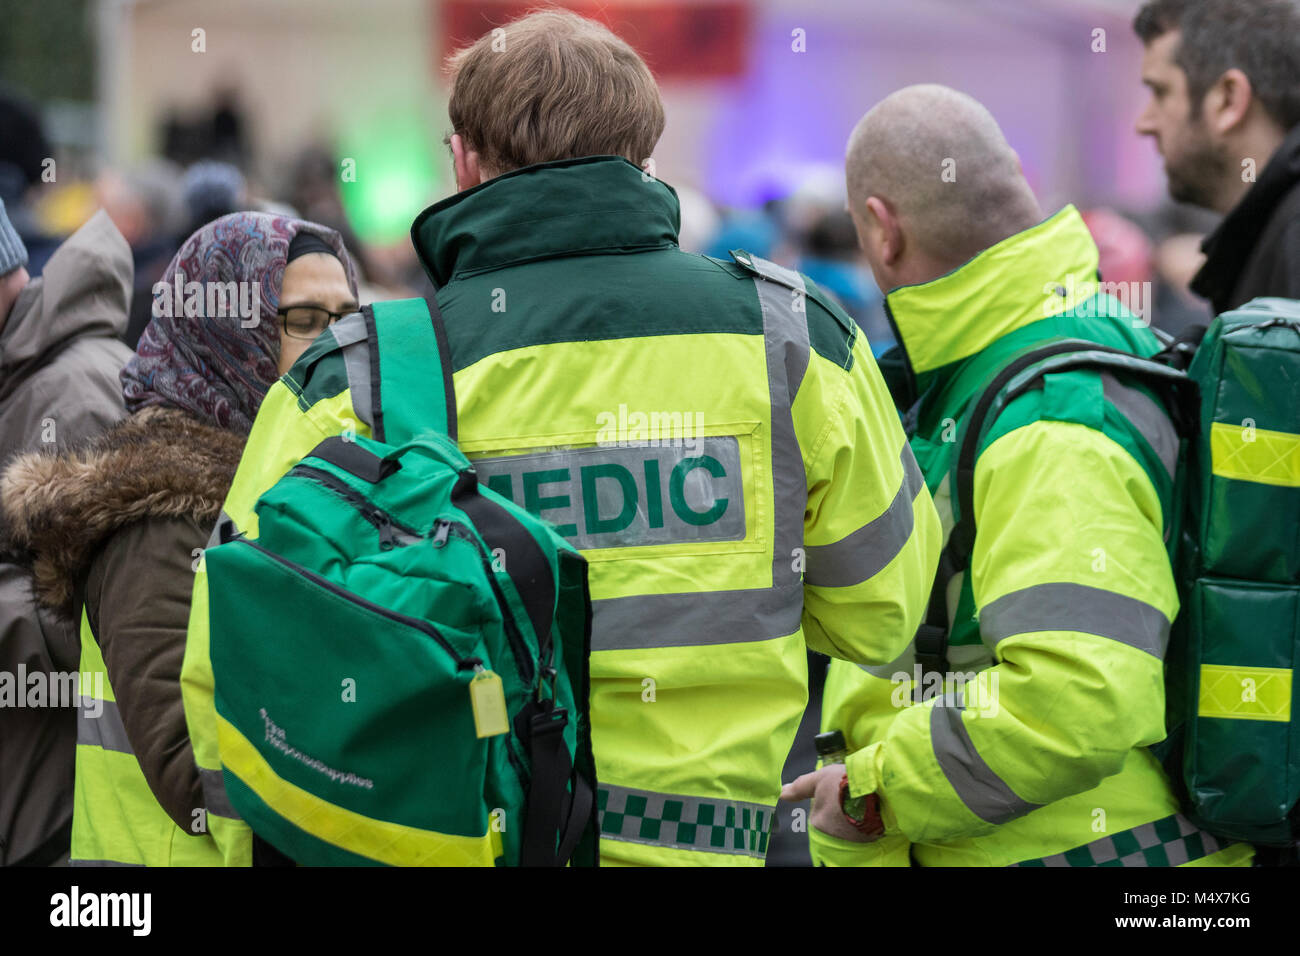 Ein Krankenwagen medic Sanitäter Not dringende medizinische Erste Hilfe cpr Antwort medizinische Ambulanzen sirene Sirenen ems Hilfe Behandlung Patient Patienten Stockfoto